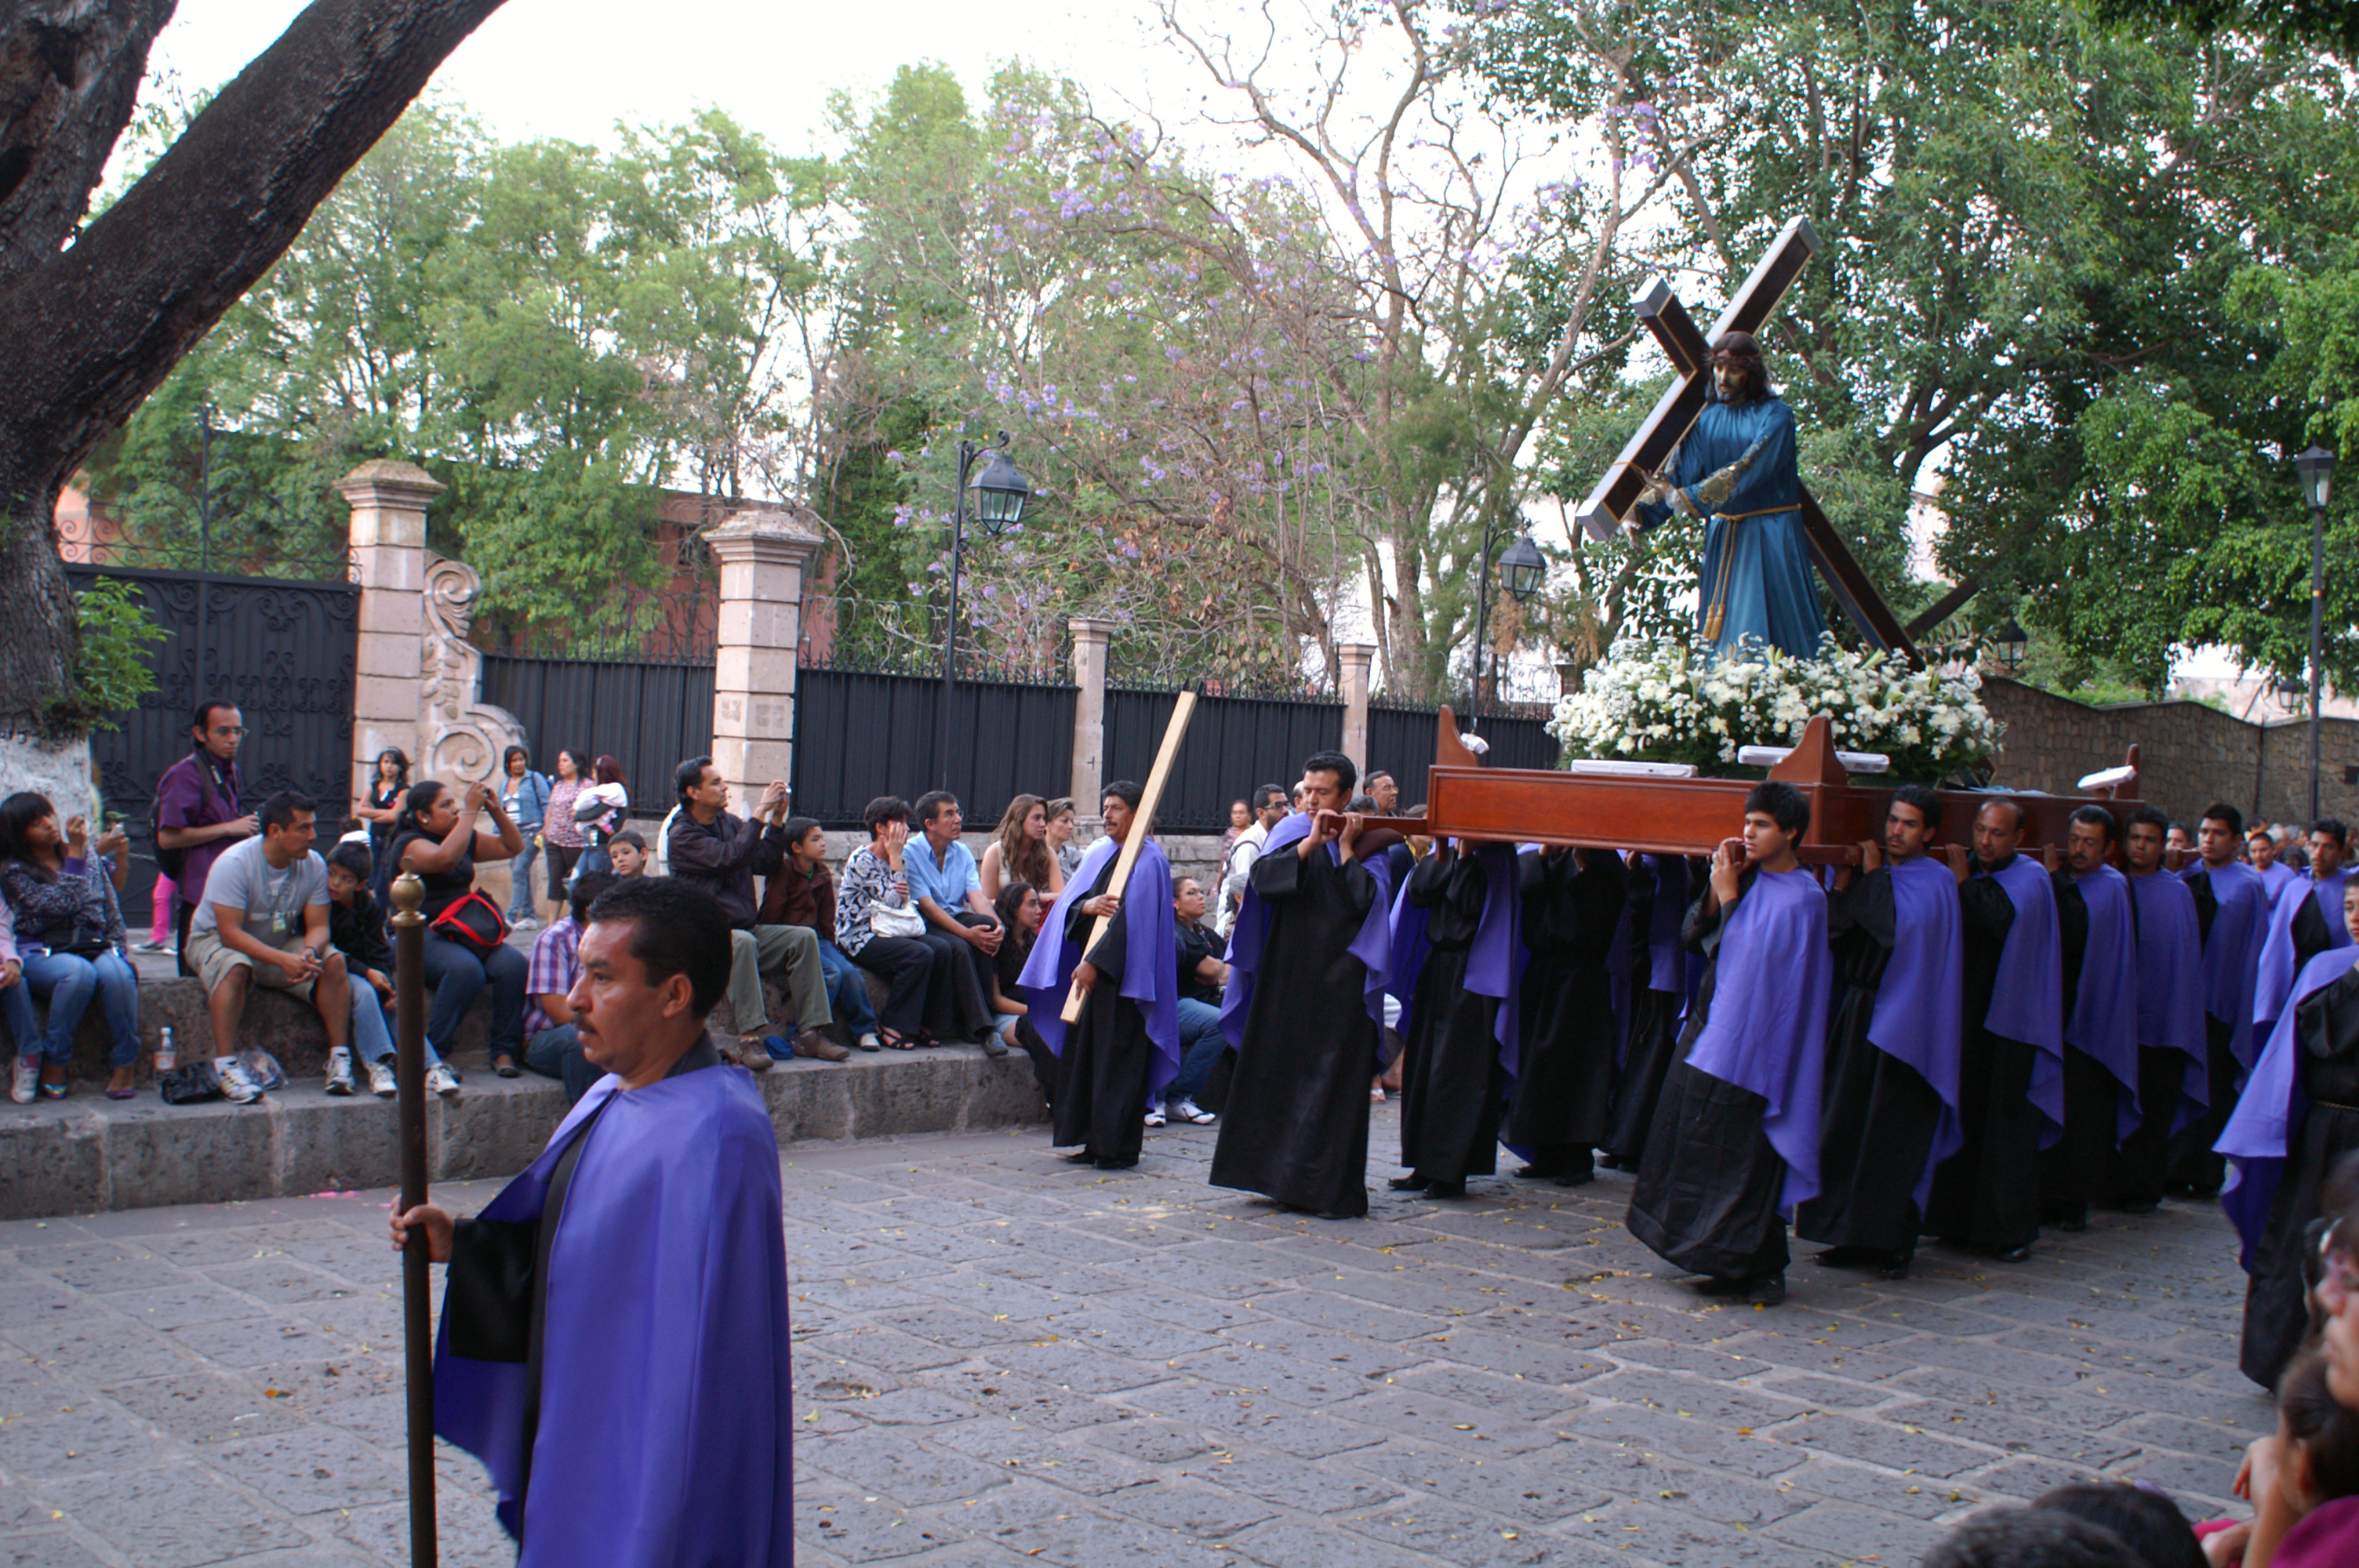 Процессия молчания - похоронная процессия в пятницу вечером перед Пасхой